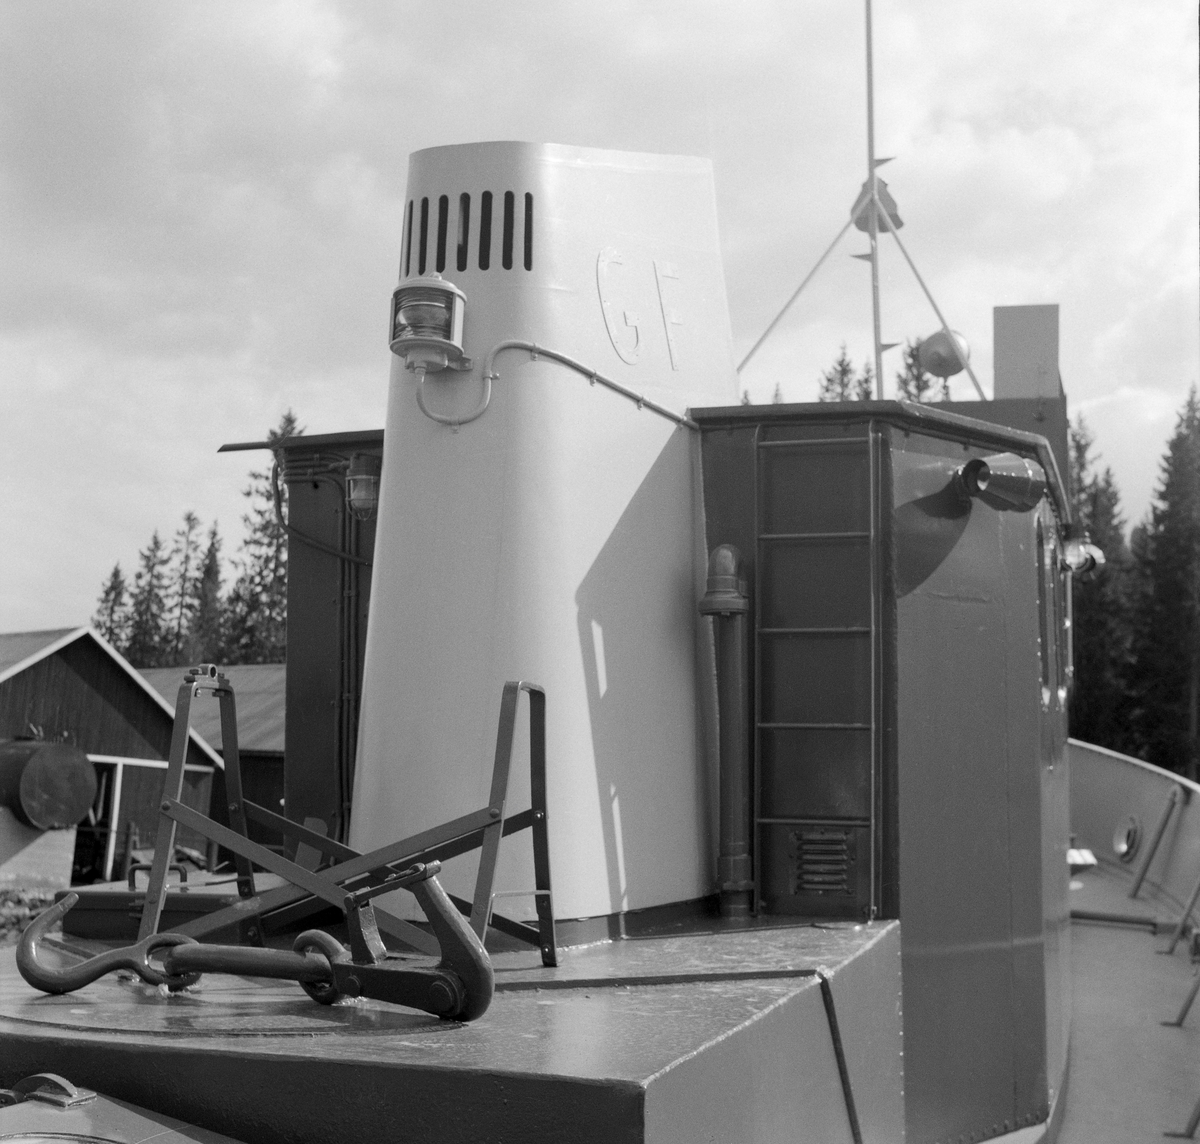 Slepebåten «Trysilknut», fotografert ved slippen på Sørlistøa ved Osensjøen i Åmot kommune i Hedmark i 1964. Fotografiet er tatt fra akterdekket, mot skorsteinen og bakveggen på styrhuset. I forgrunnen ligger slepekroken. I 1964 var dette fartøyet 50 år gammelt. Skroget var slik det alltid hadde vært - 55 fot langt og 12 fot bredt, klinket sammen av det som i 1914 var «bedste sort skibsbygningsstaal», levert av Glommens mek. Verksted i Fredrikstad. Men Trysilknut var i utgangspunktet et dampdrevet fartøy. Dampmaskinen viste seg imidlertid i veikeste laget for de store tømmerbommene som skulle bukseres over den bortimot tre mil lange og 47 kvadratkilometer store Osensjøen. Etter 2. verdenskrig ble mange av slepebåtene som fellesfløtingsforeningene disponerte ombygd til dieseldrift. Lederne i Glomma fellesfløtingsforening planla modernisering av Trysilknut ut fra en overbevisning om at man på litt lengre sikt skulle oppnå større trekkraft og samtidig redusere driftskostnadene. Dieselmotorene krevde nemlig langt mindre betjening enn dampmaskinene, og følgelig ville en dieseldrevet slepebåt kunne opereres med mindre mannskap enn et dampfartøy. I Trysilknuts tilfelle så man for seg at to fyrbøtere og en maskinist kunne utgå fra besetningen. Her lå det et betydelig innsparingspotensial i en periode med stigende lønnskostnader. I 1956 sendte direktøren i Glomma fellesfløtingsforening prisforespørsler til firmaer som man antok kunne påta seg ombyggingsarbeidet. Oppdraget gikk også denne gangen til Glommens mek. verksted. Demonteringa av dampmaskinen innebar også at det ble en del ledig plass om bord. Ominnredningsarbeidet ble overlatt til Ivar Hagens båtbyggeri på Hjelset utenfor Molde. Resultatet ble at Trysilknut - etter ombyggingsarbeidet vinteren 1957-58 framsto med et noe endret eksteriør og et fullstendig modernisert interiør.